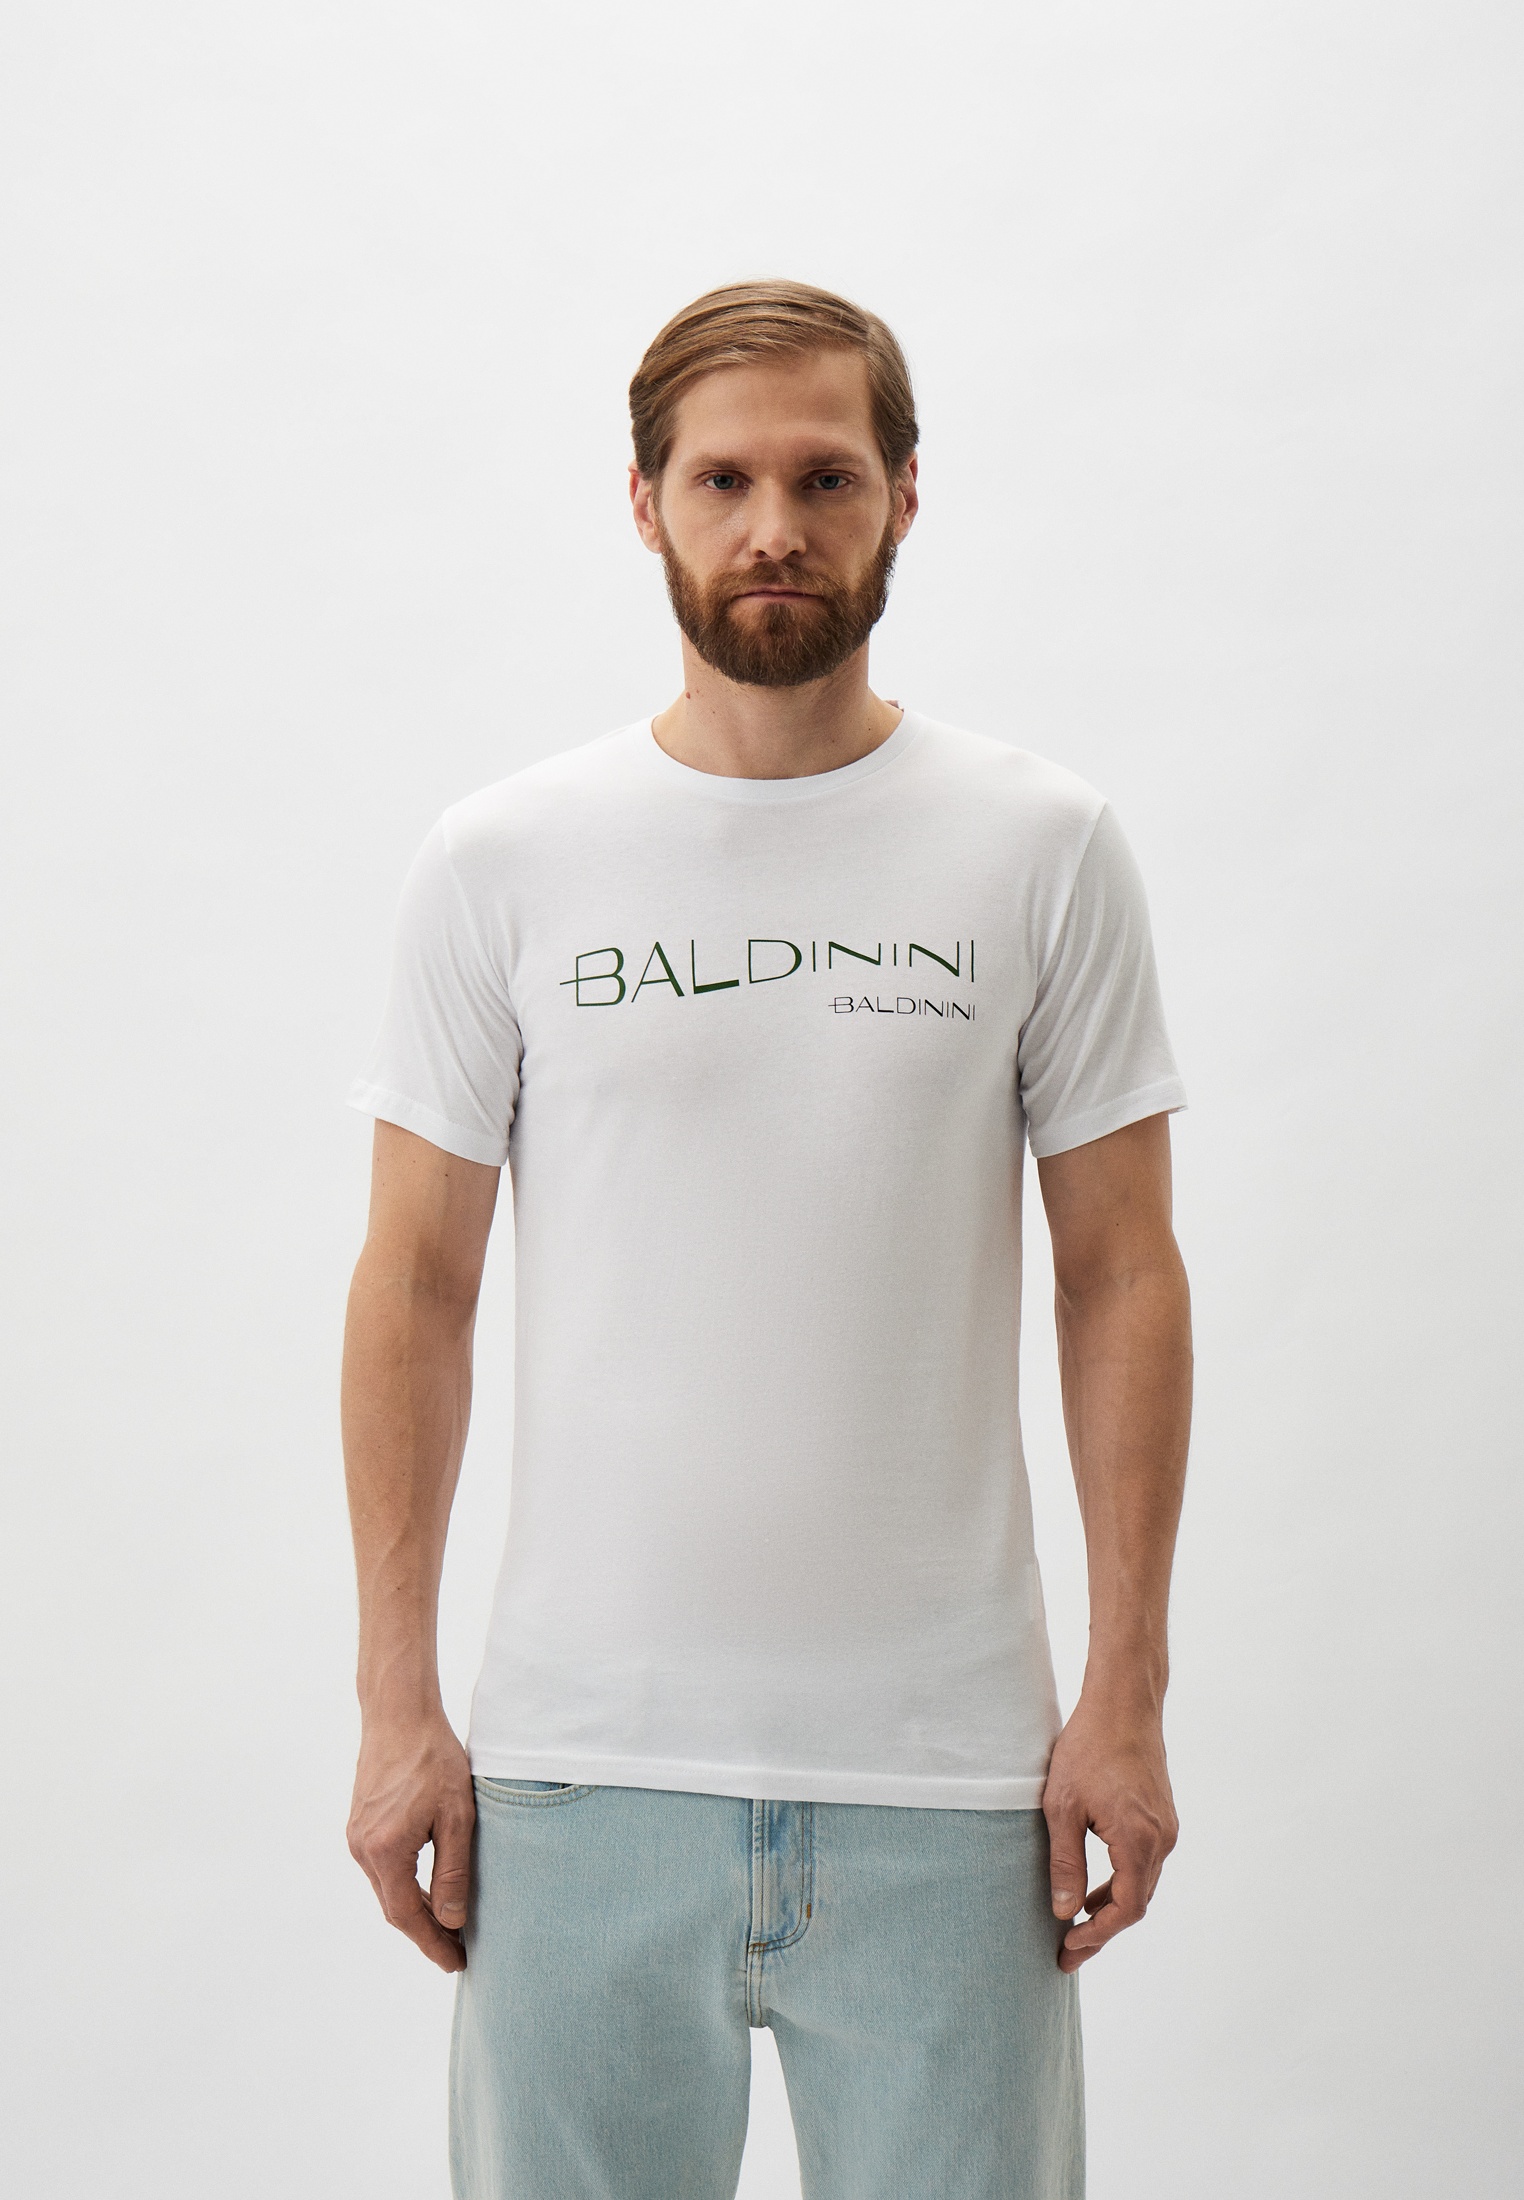 Мужская футболка Baldinini (Балдинини) B-OLM-M042: изображение 1